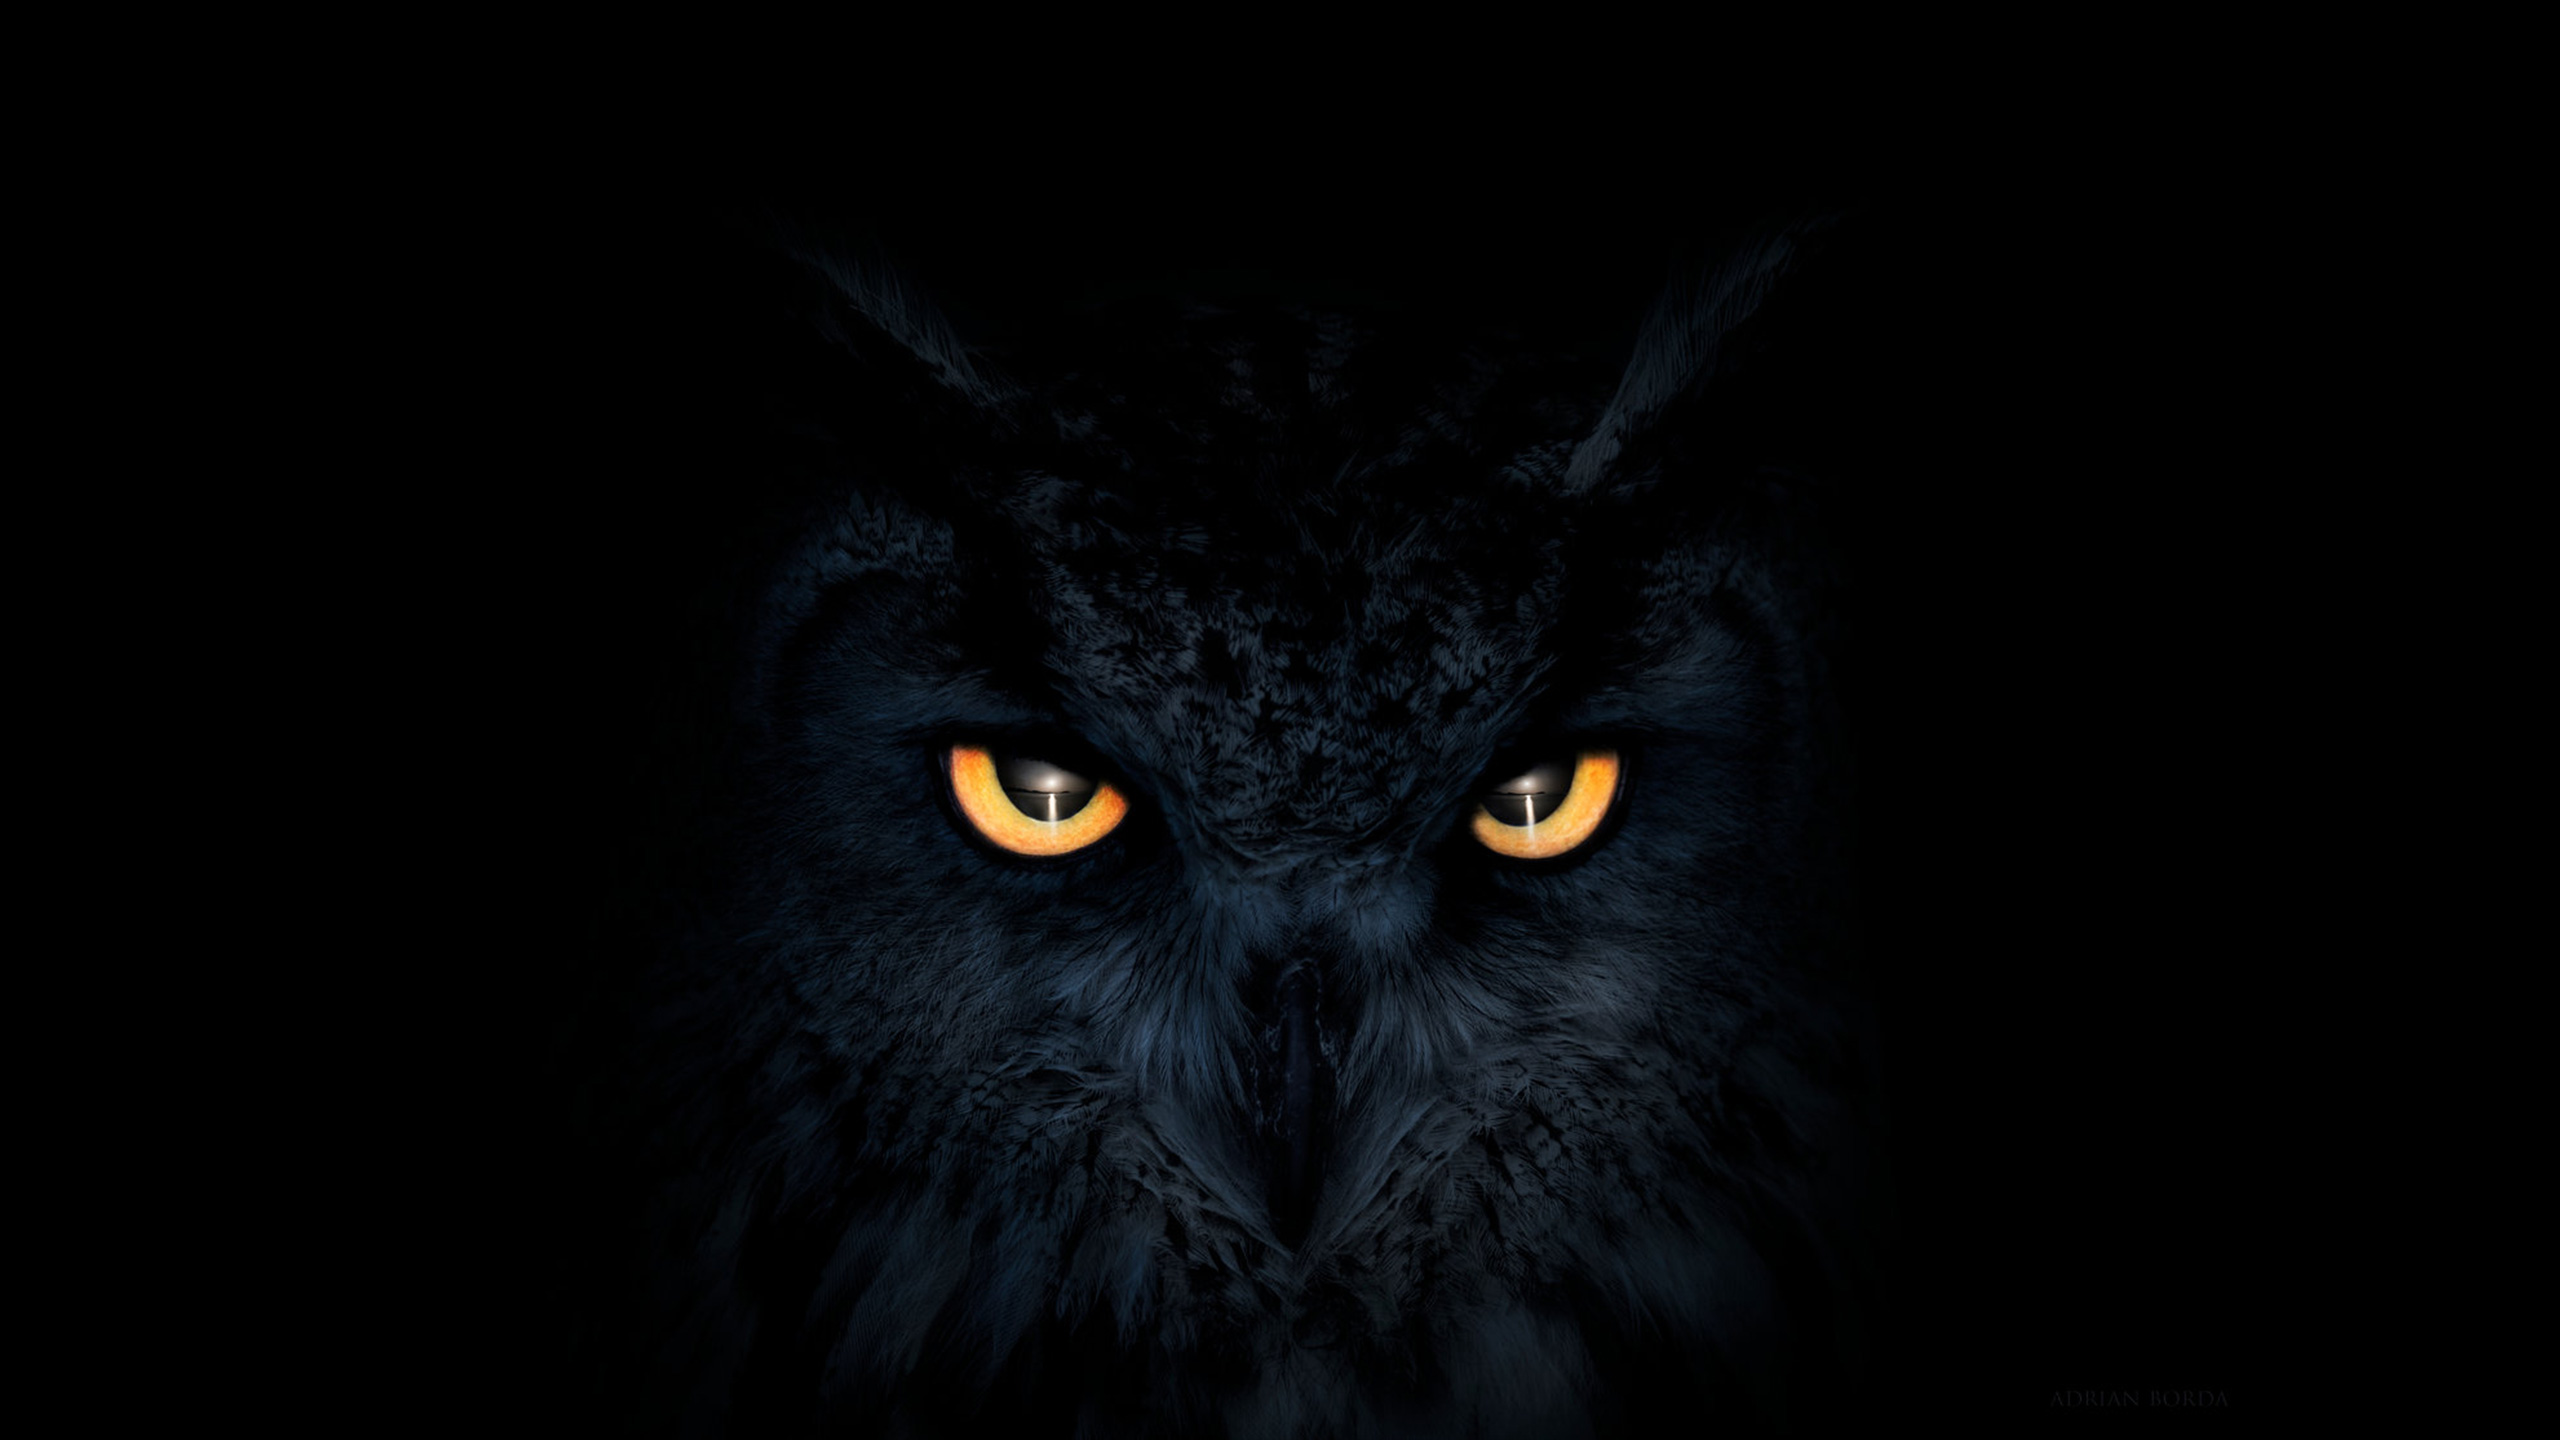 Owl Dark  Glowing Eyes  HD  Artist 4k Wallpapers  Images 